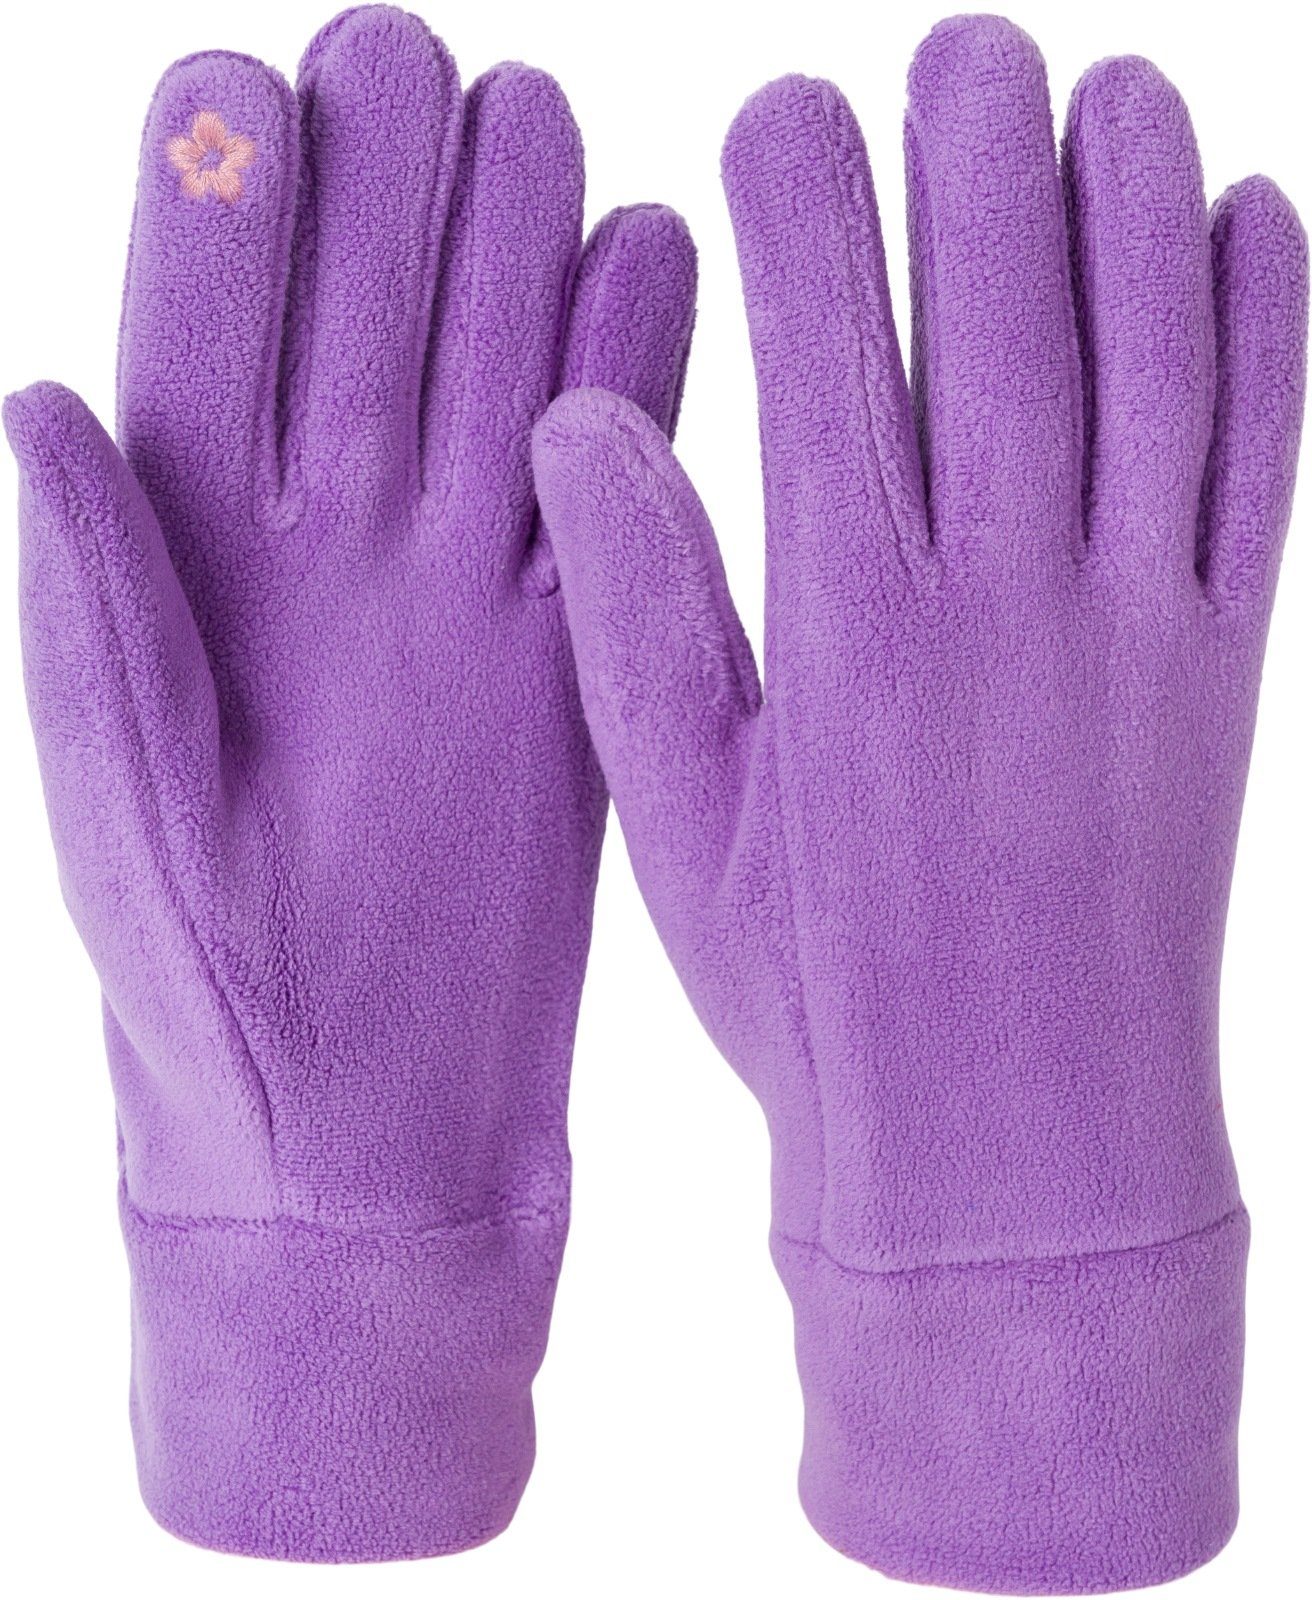 styleBREAKER Fleecehandschuhe Einfarbige Touchscreen Fleece Handschuhe Lila | Fleecehandschuhe